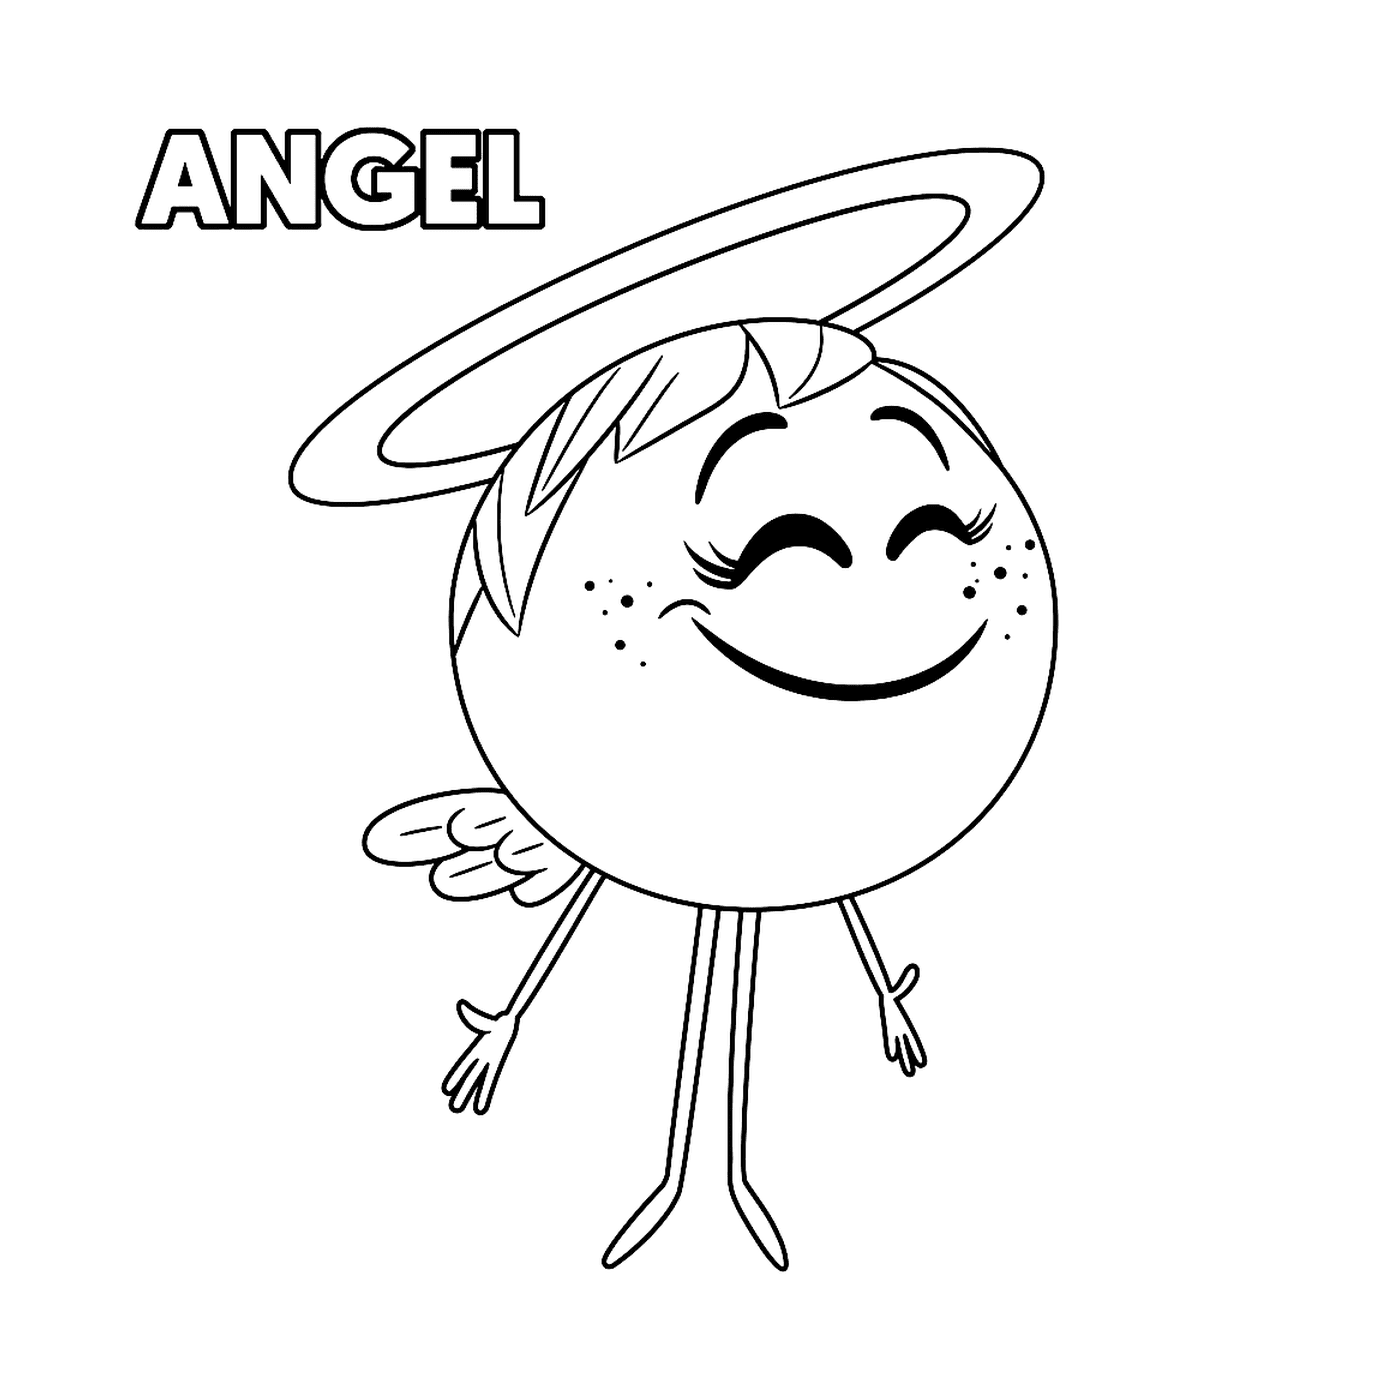  ángel emoji mundo secreto de emojis 